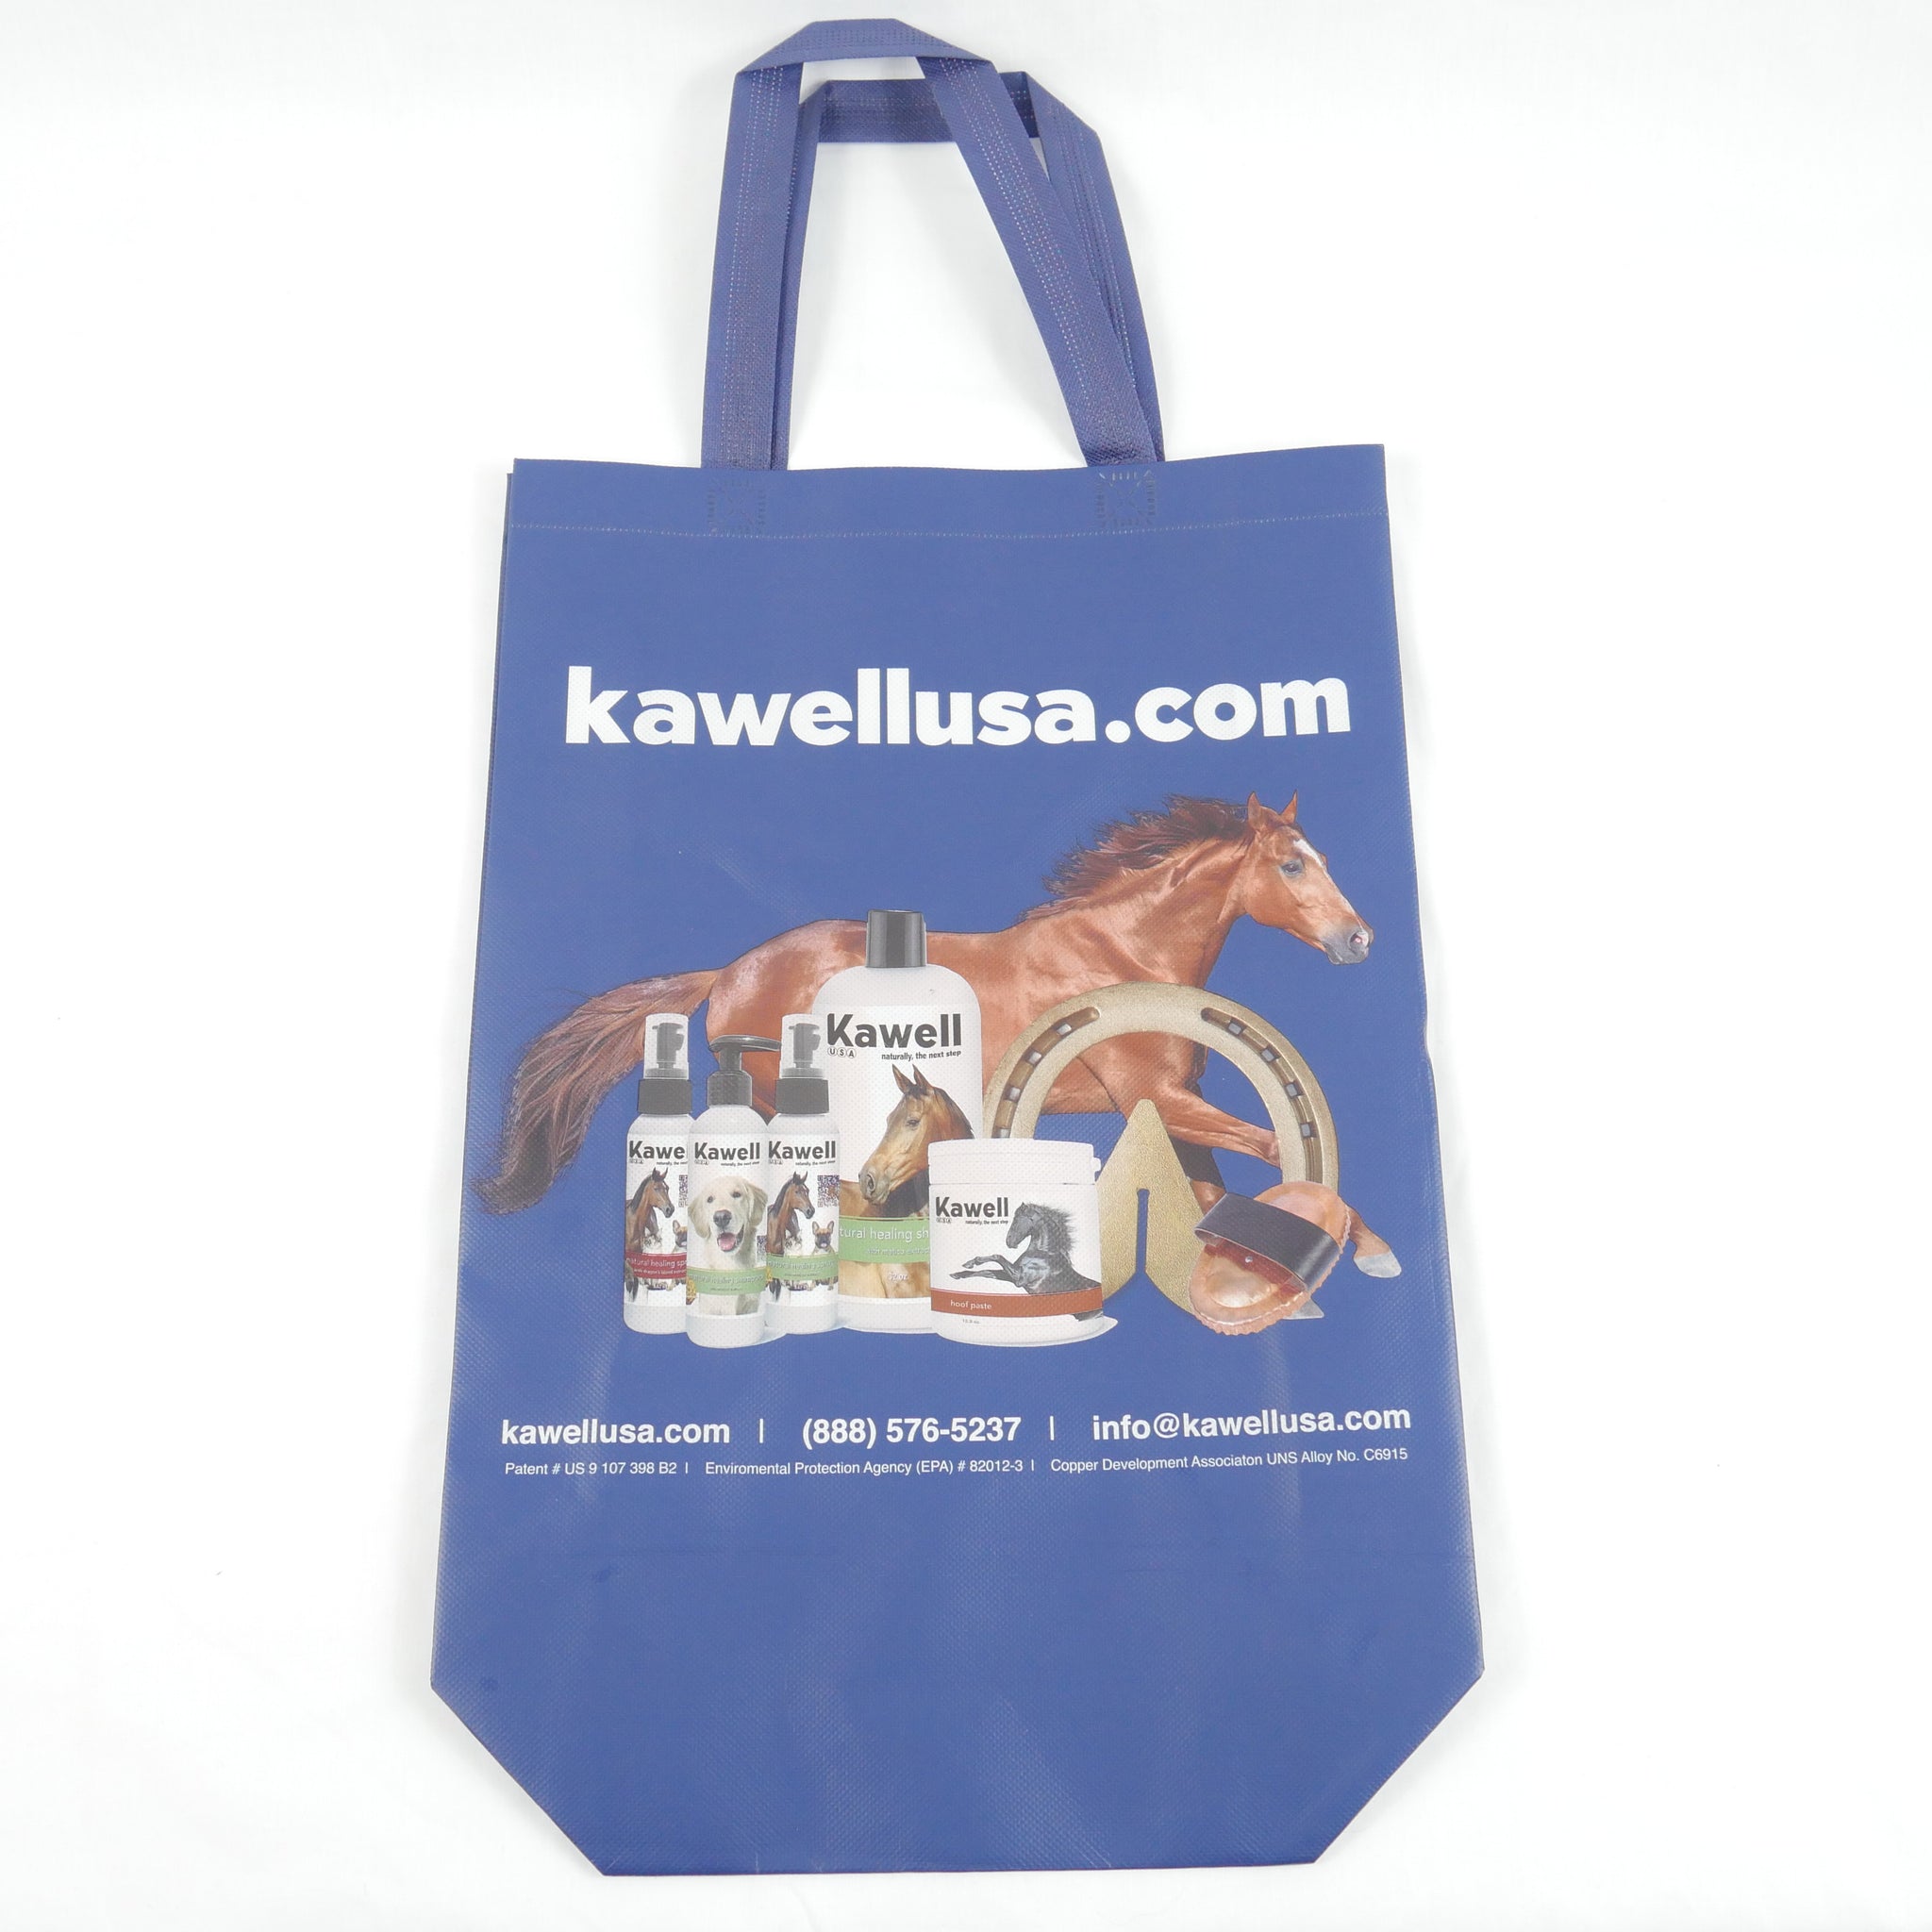 Kawell Tote Bag